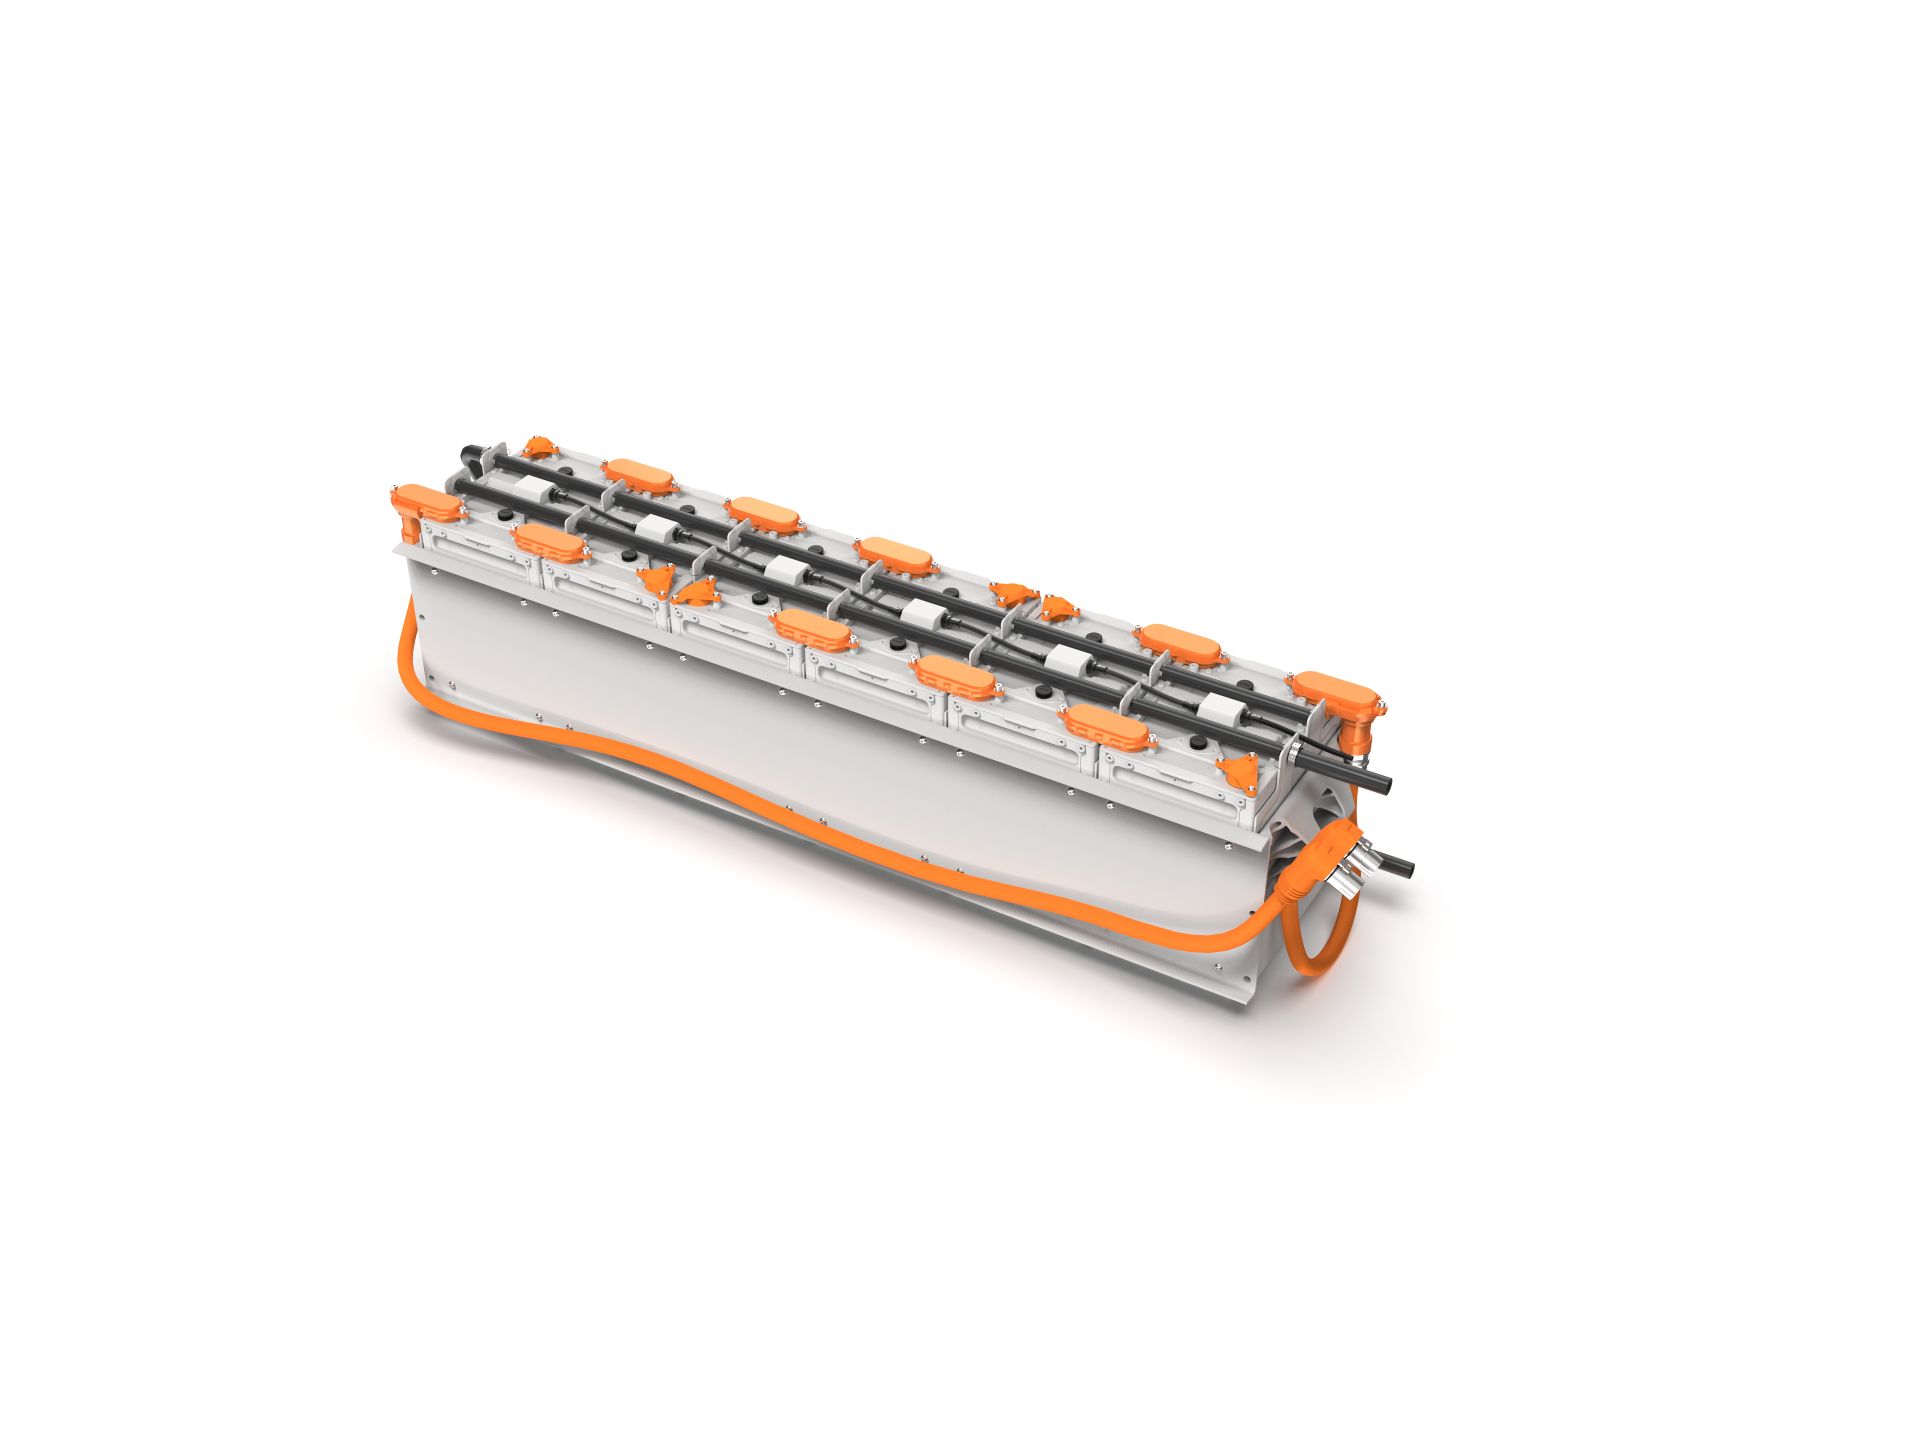 Das finnische Startup Aurora Powertrains ließ am Fraunhofer ILT ein maßgeschneidertes Laserschweißsystem für seine modulare, skalierbare Schneemobil-Batterie entwickeln.